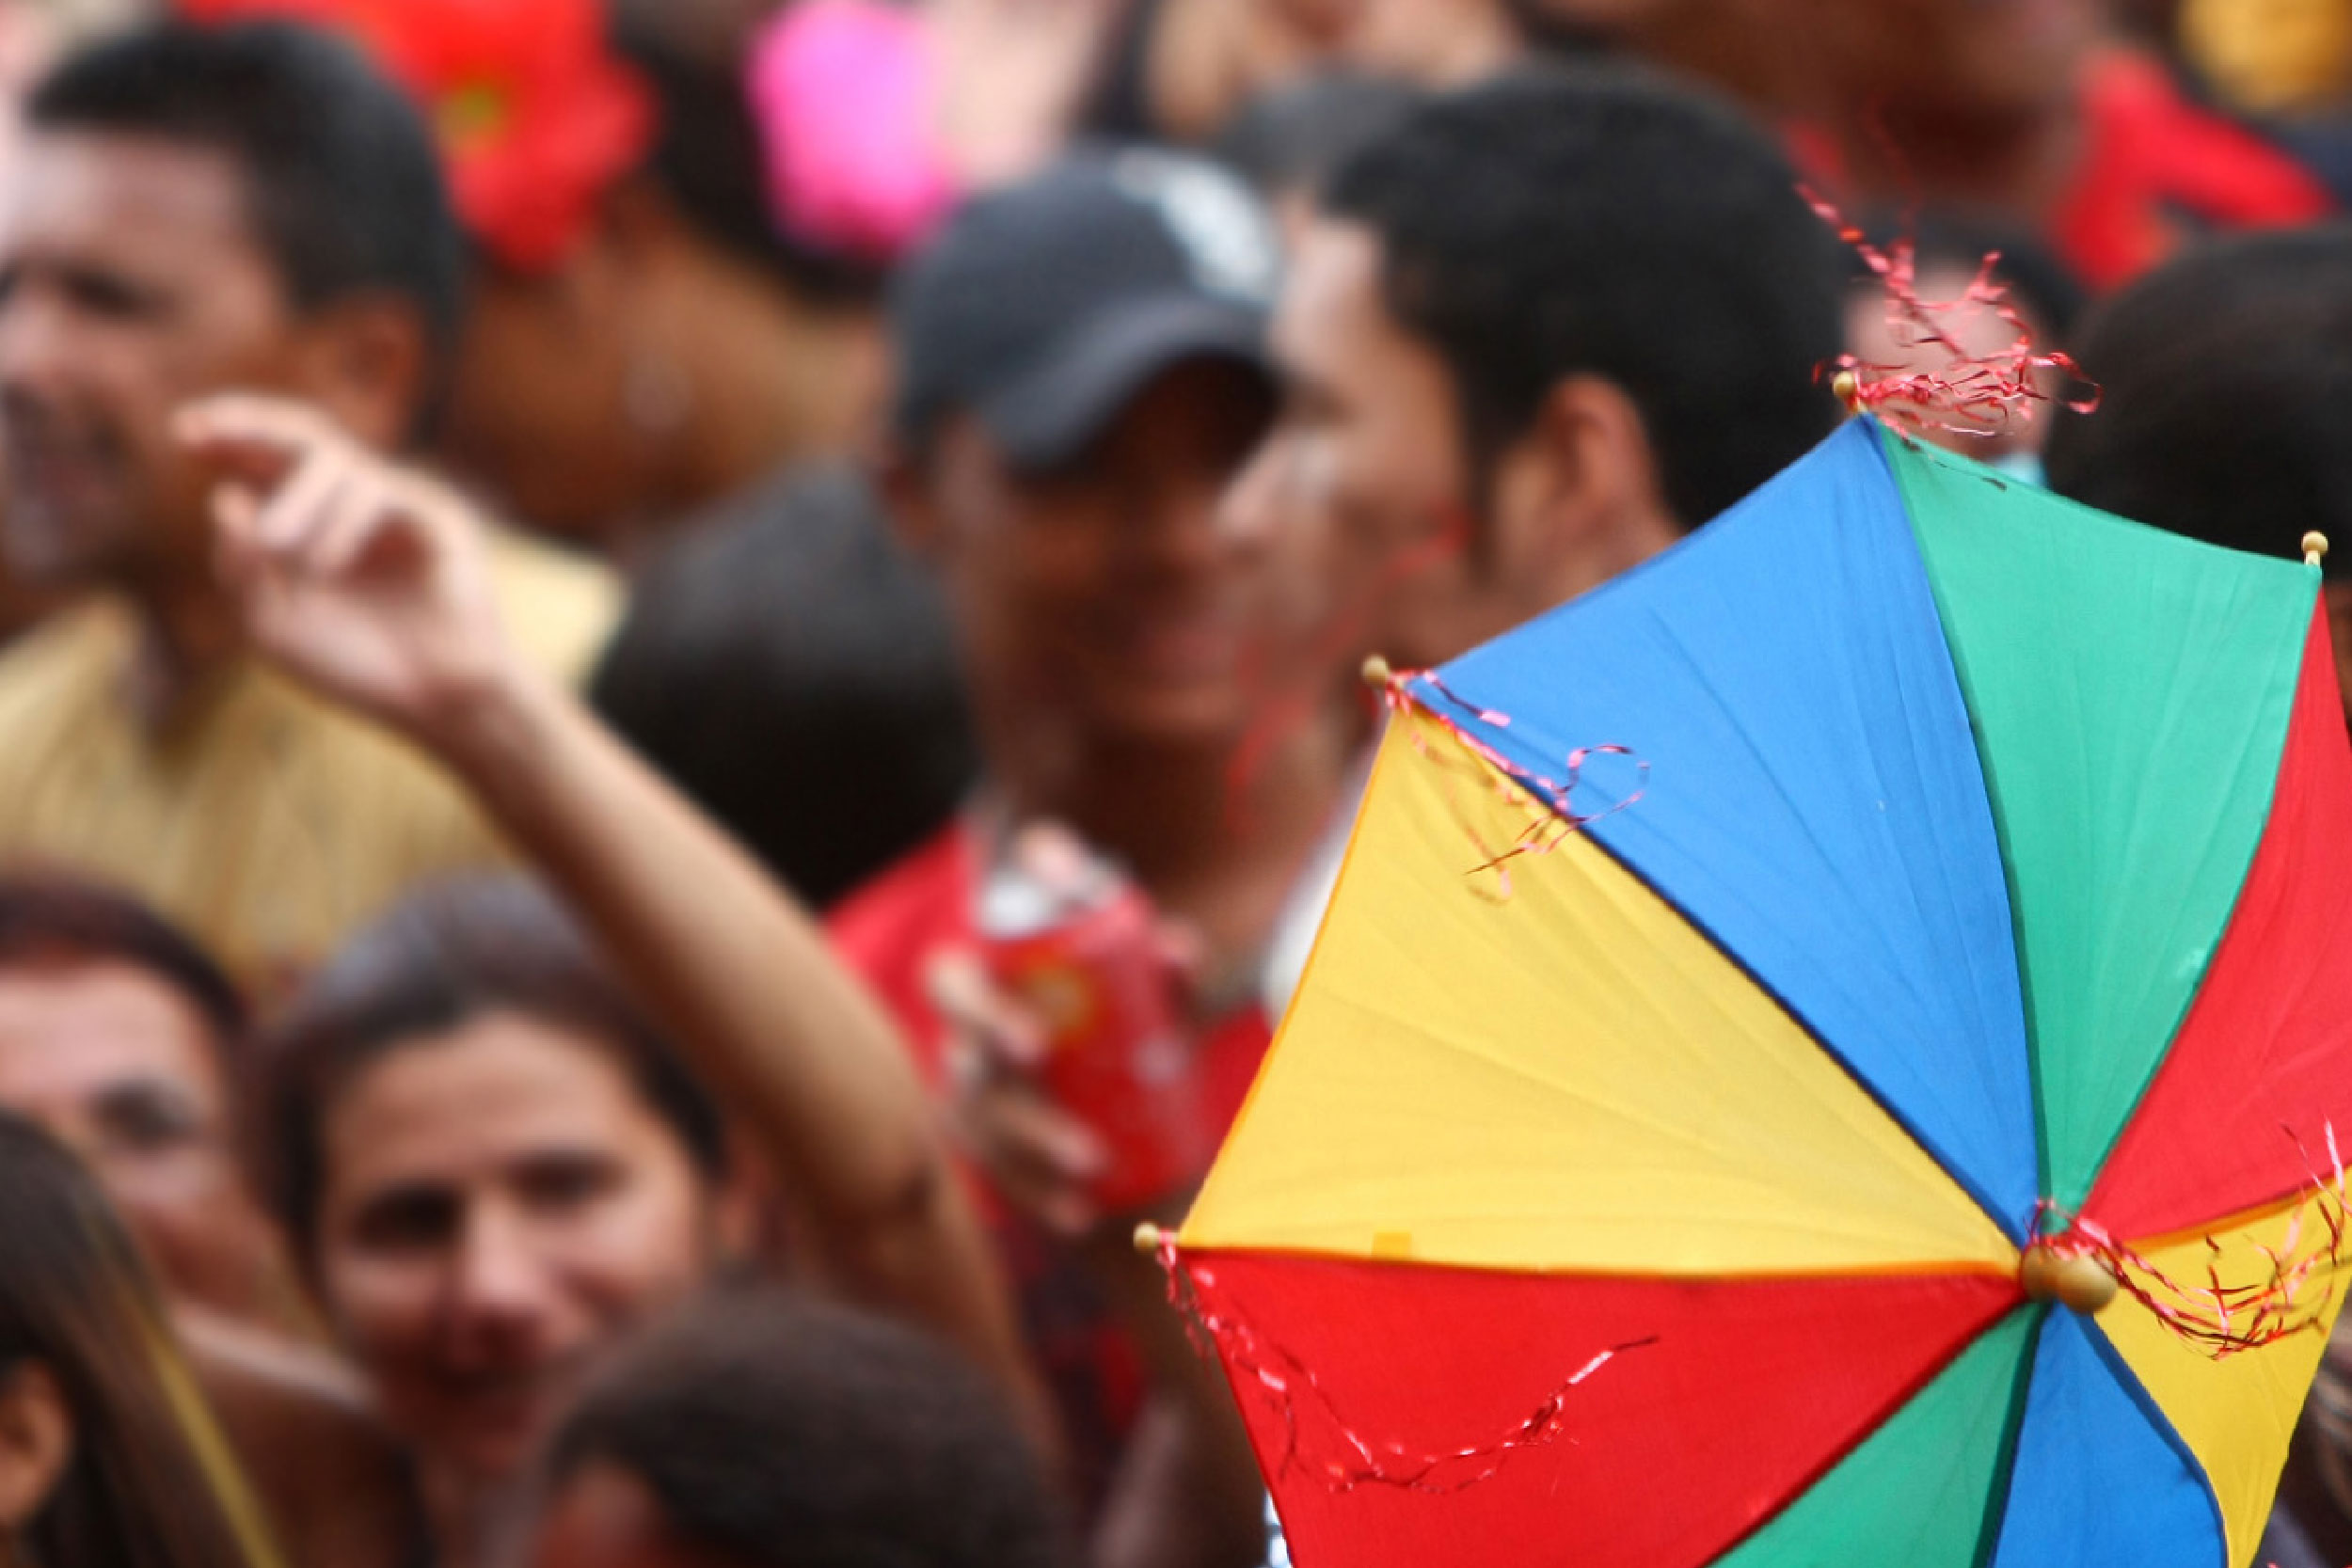 Fotografia de multidão dançando carnaval com destaque para uma sombrinha de frevo em primeiro plano